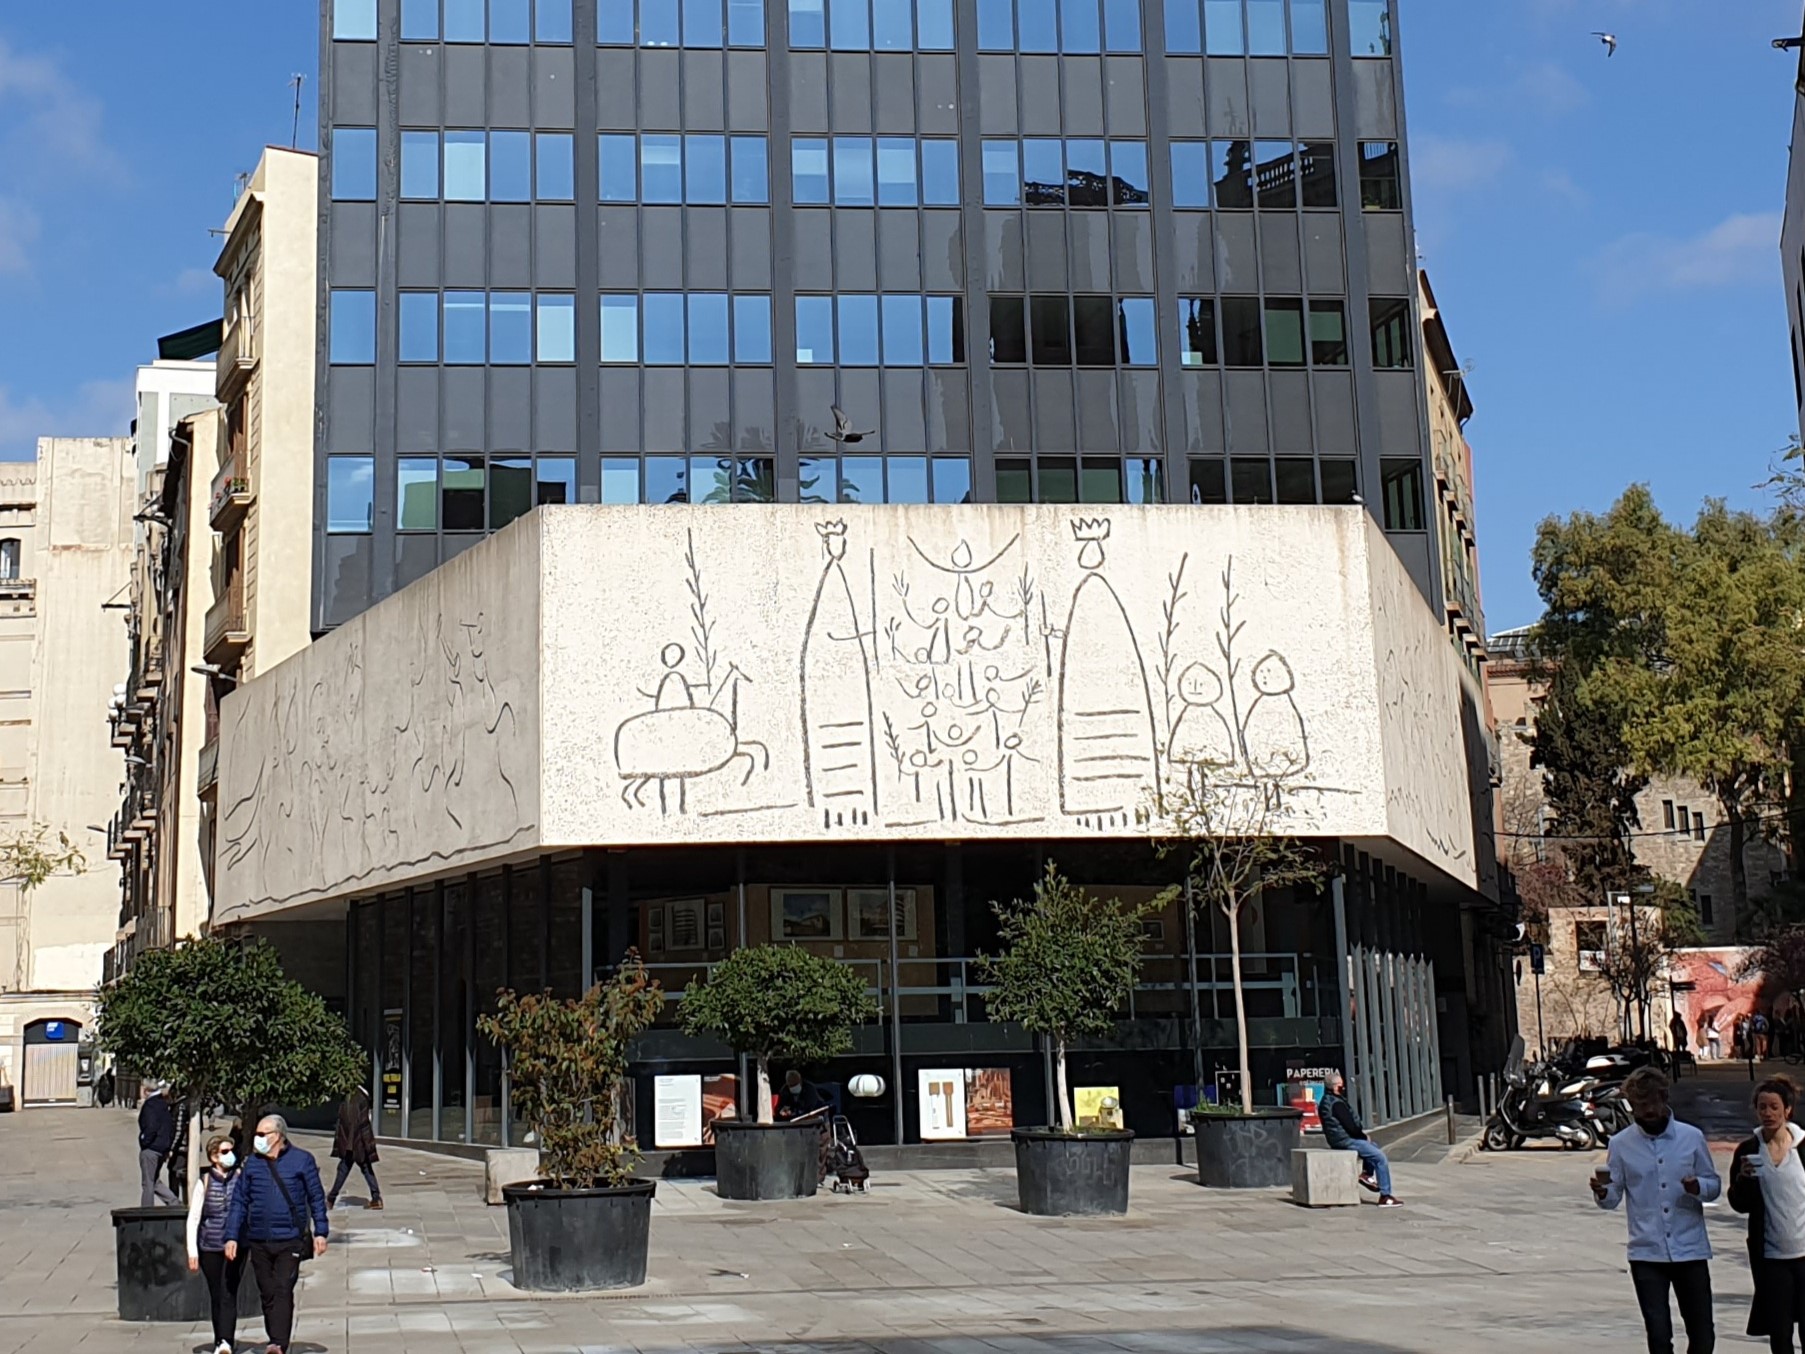 Parete da disegno di Picasso, piazza della cattedrale di Barcellona.